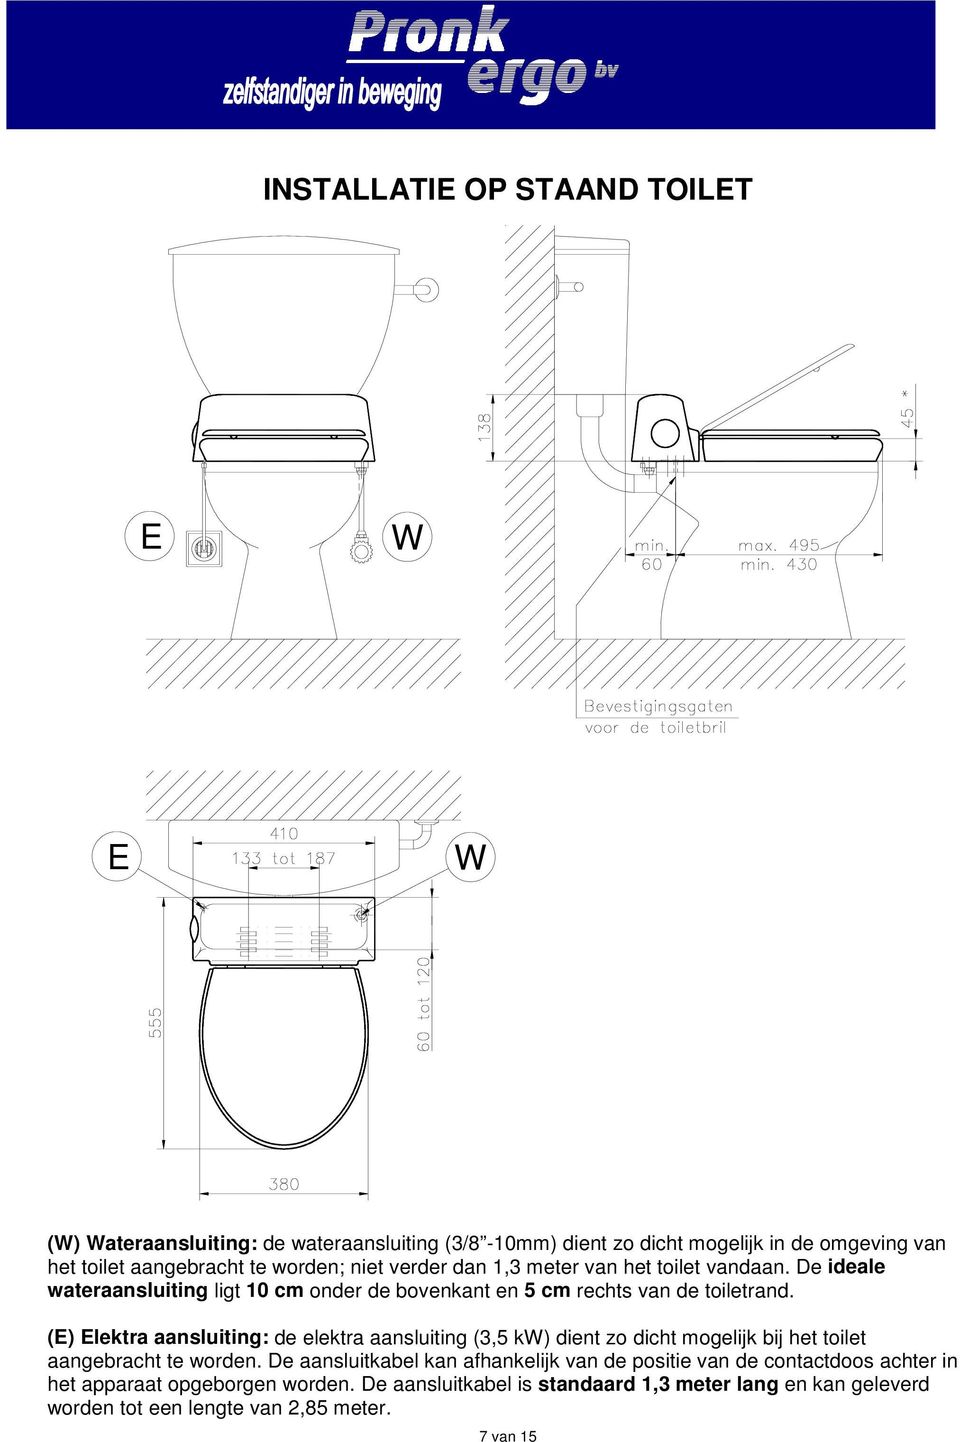 (E) Elektra aansluiting: de elektra aansluiting (3,5 k) dient zo dicht mogelijk bij het toilet aangebracht te worden.